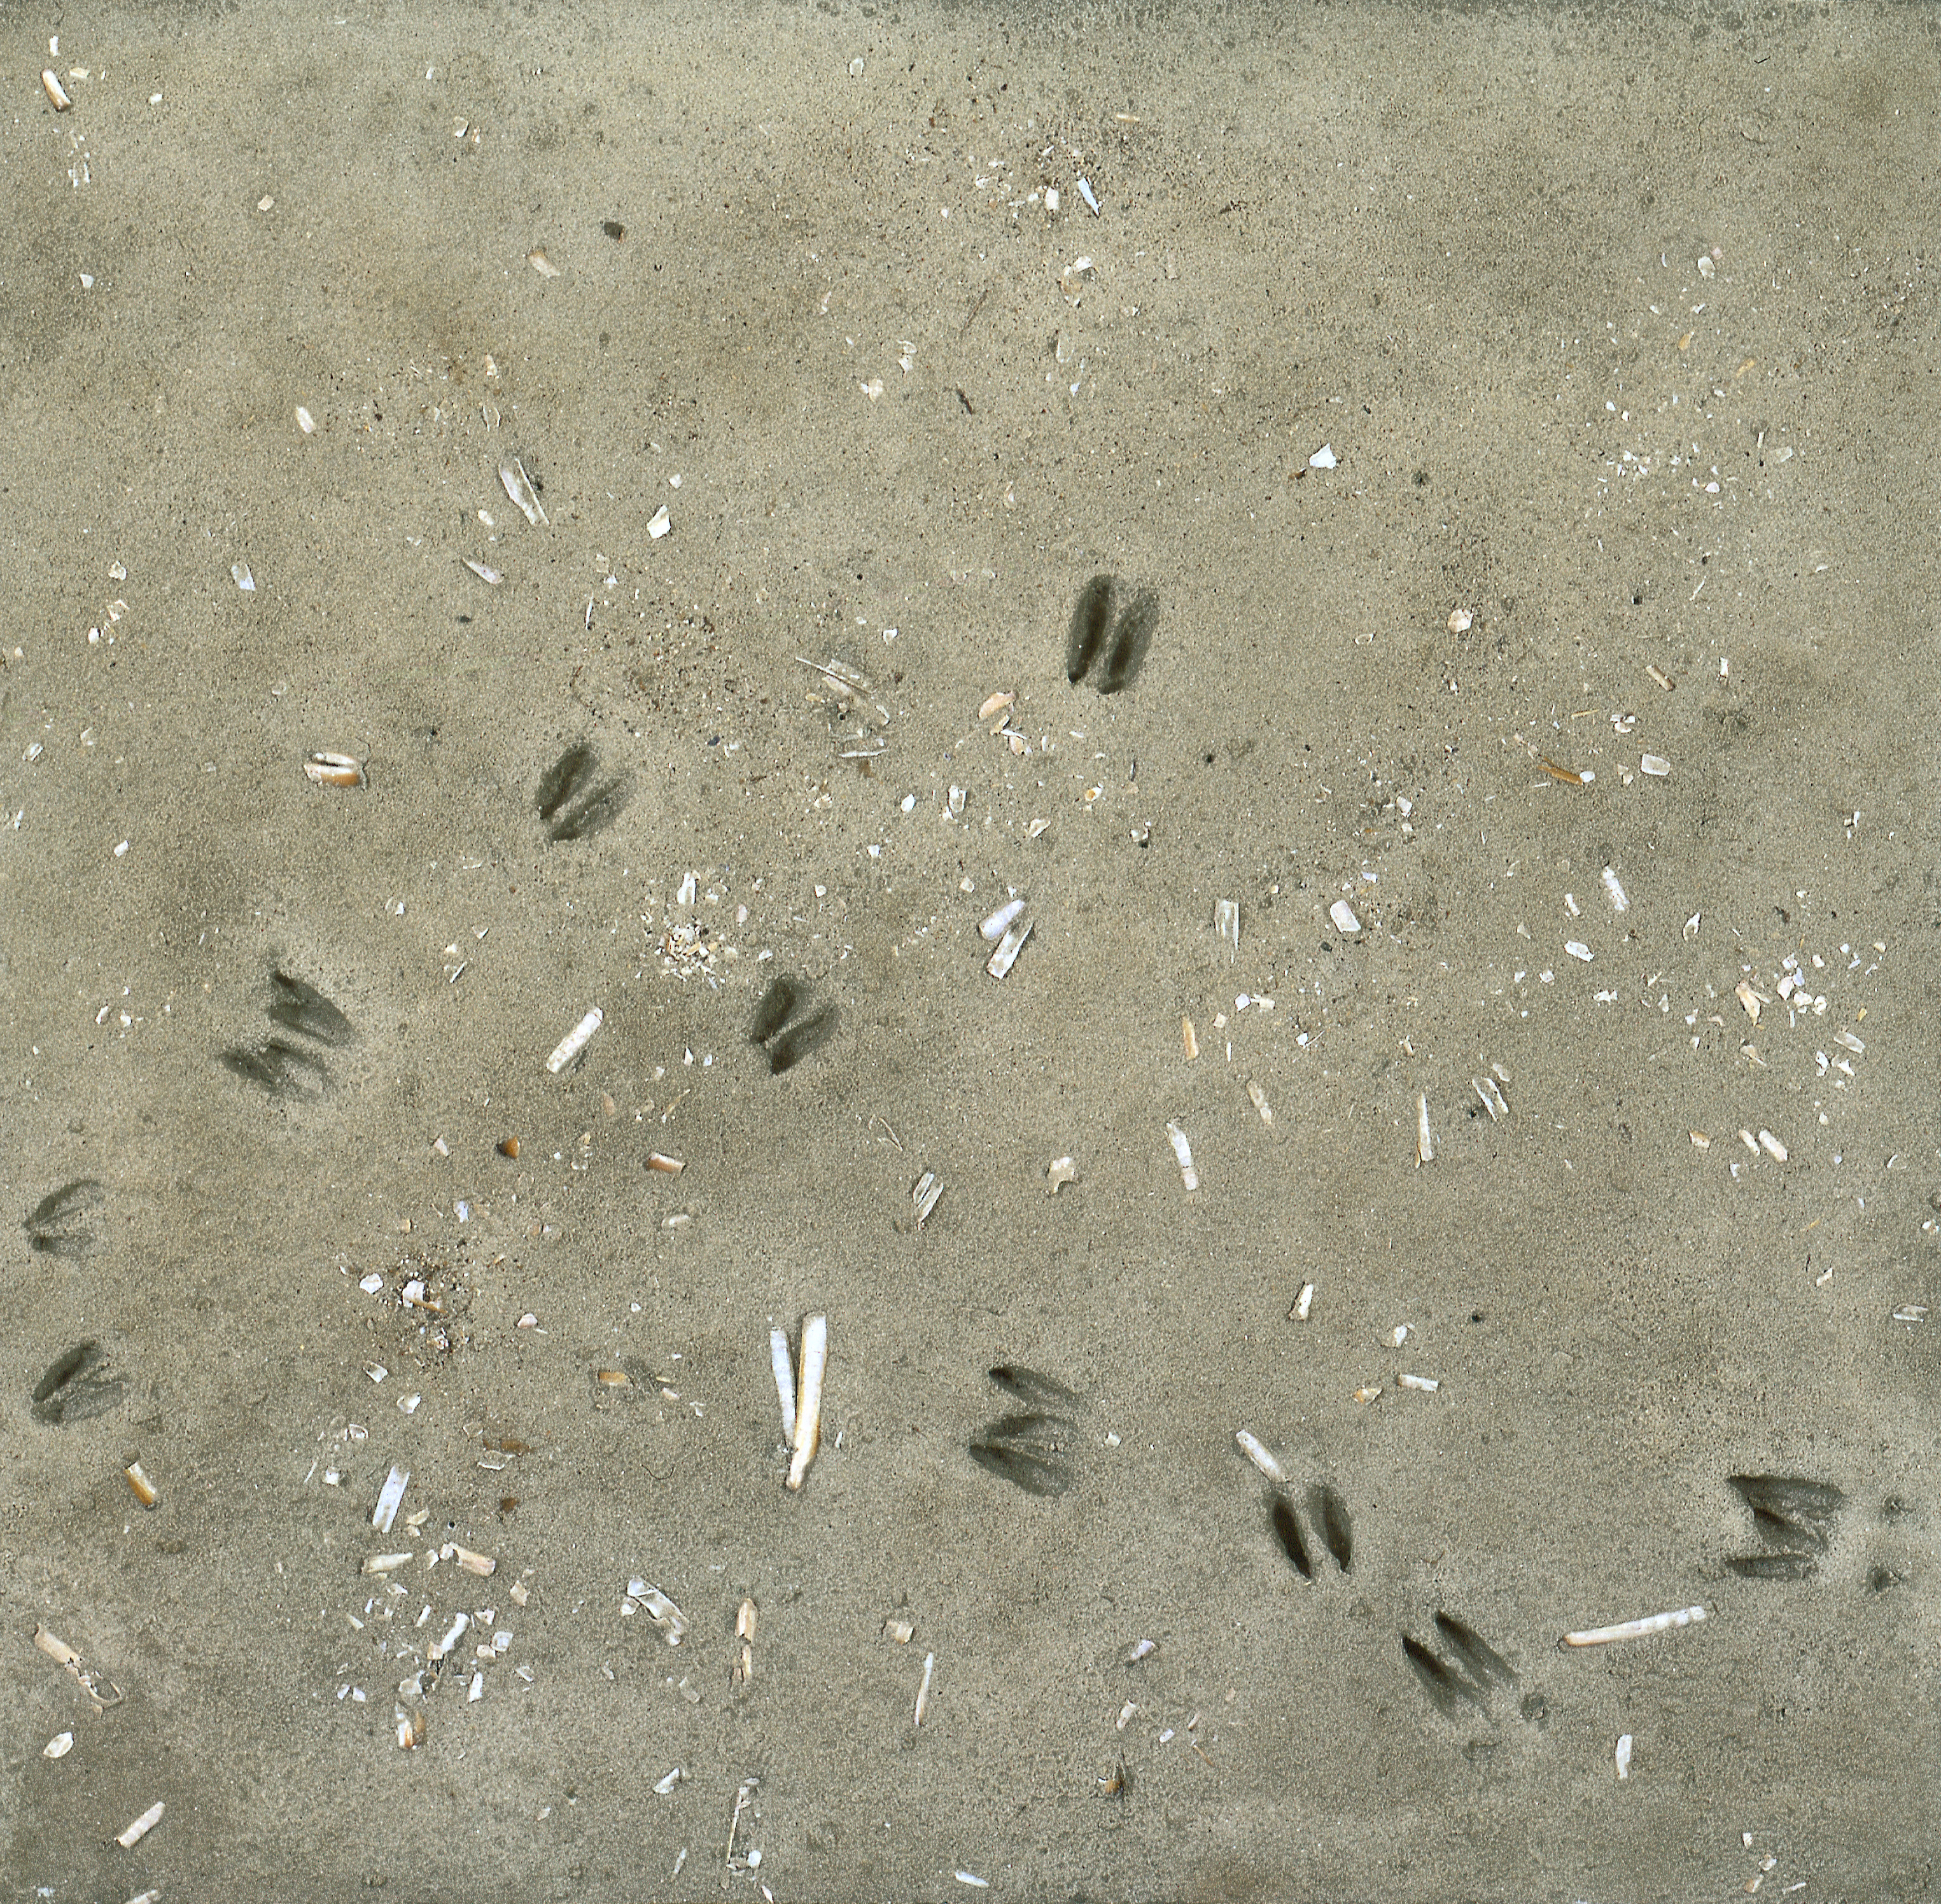 Nahaufnahme: Sandboden mit einigen Muscheln und Pflanzenresten